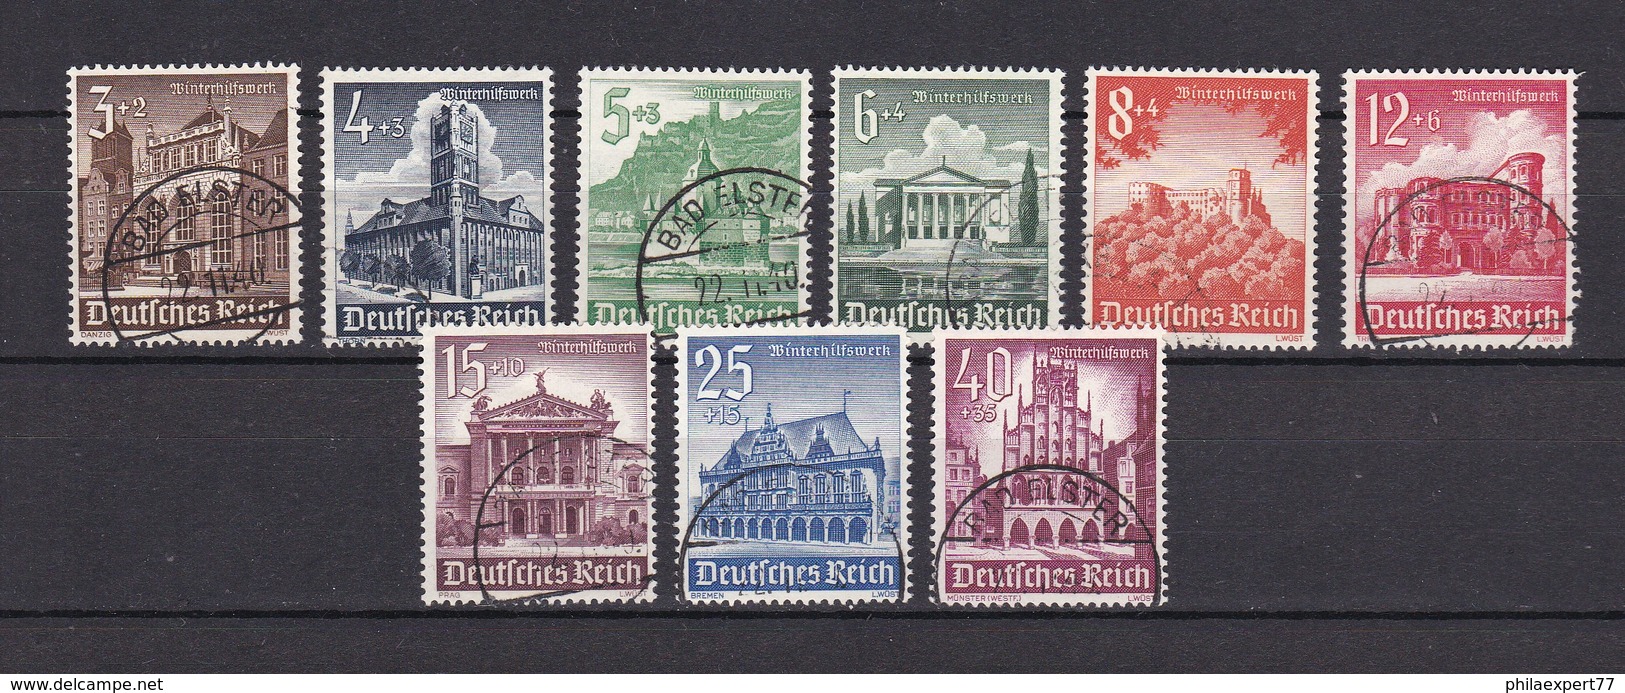 Deutsches Reich - 1940 - Michel Nr. 751/759 - Gest. - 19 Euro - Gebraucht